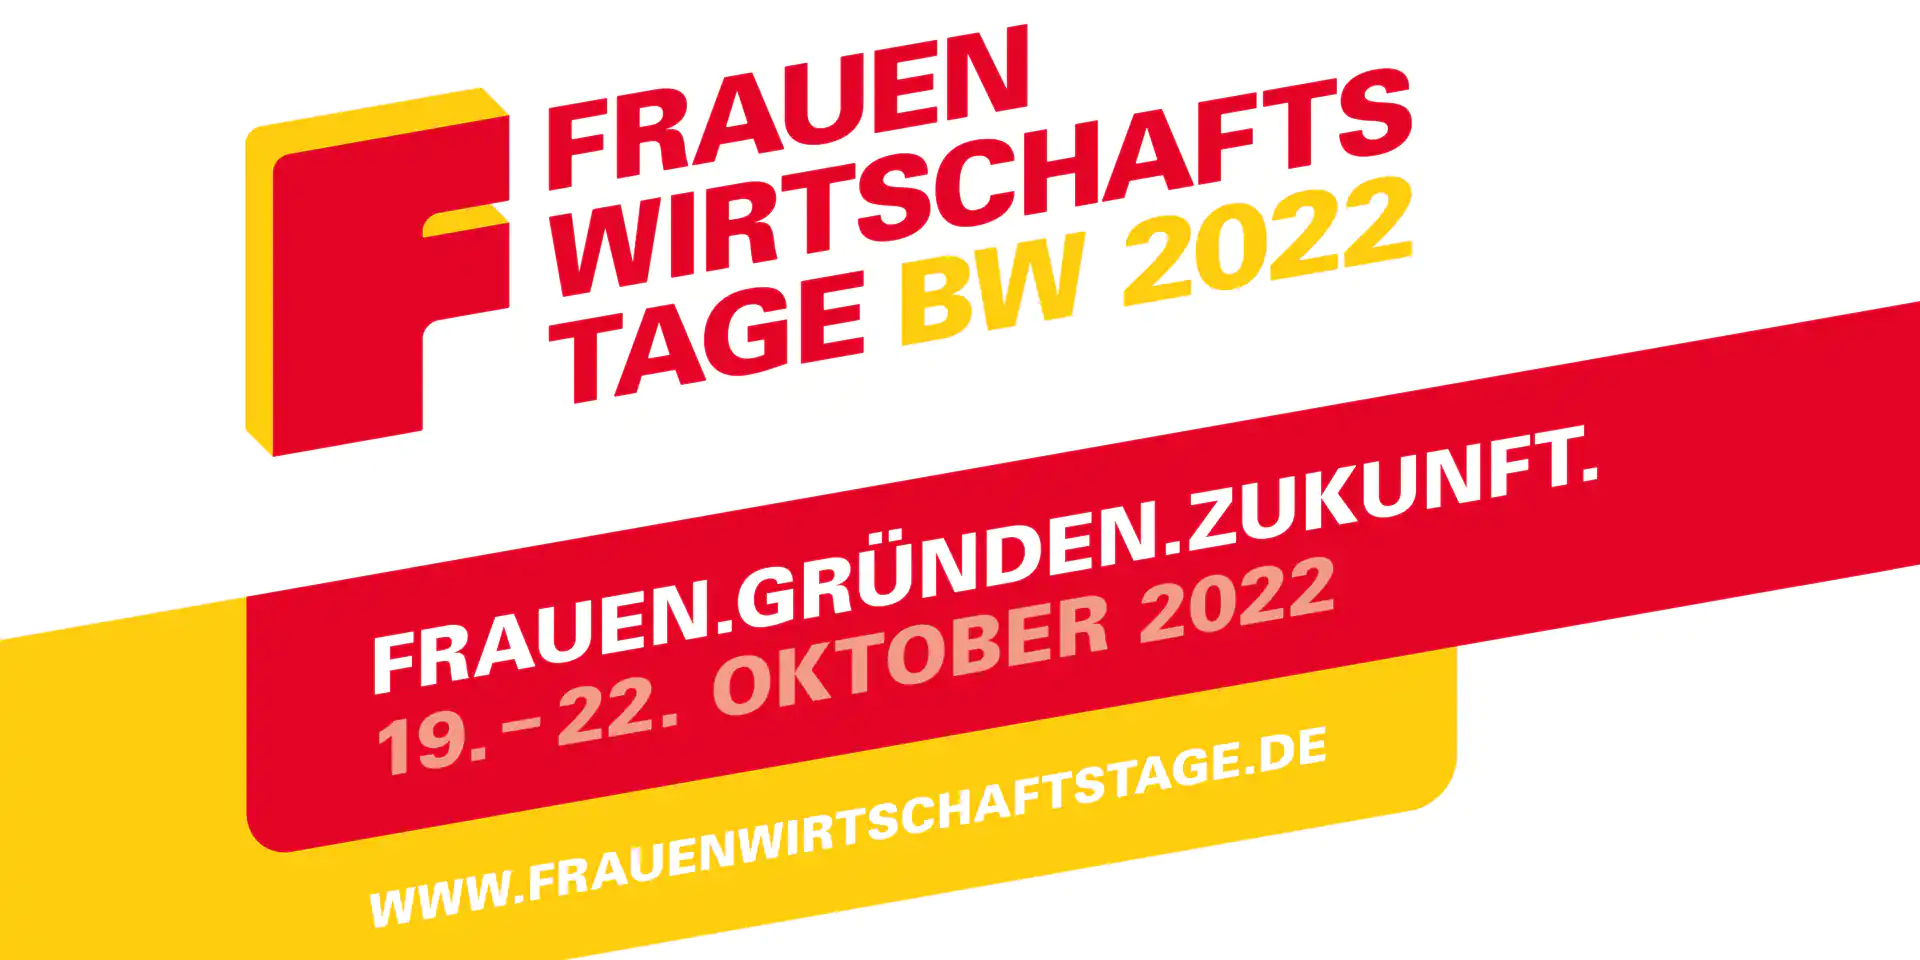 Programm zu den Frauenwirtschaftstagen in Reutlingen vom 19.-22.10.22